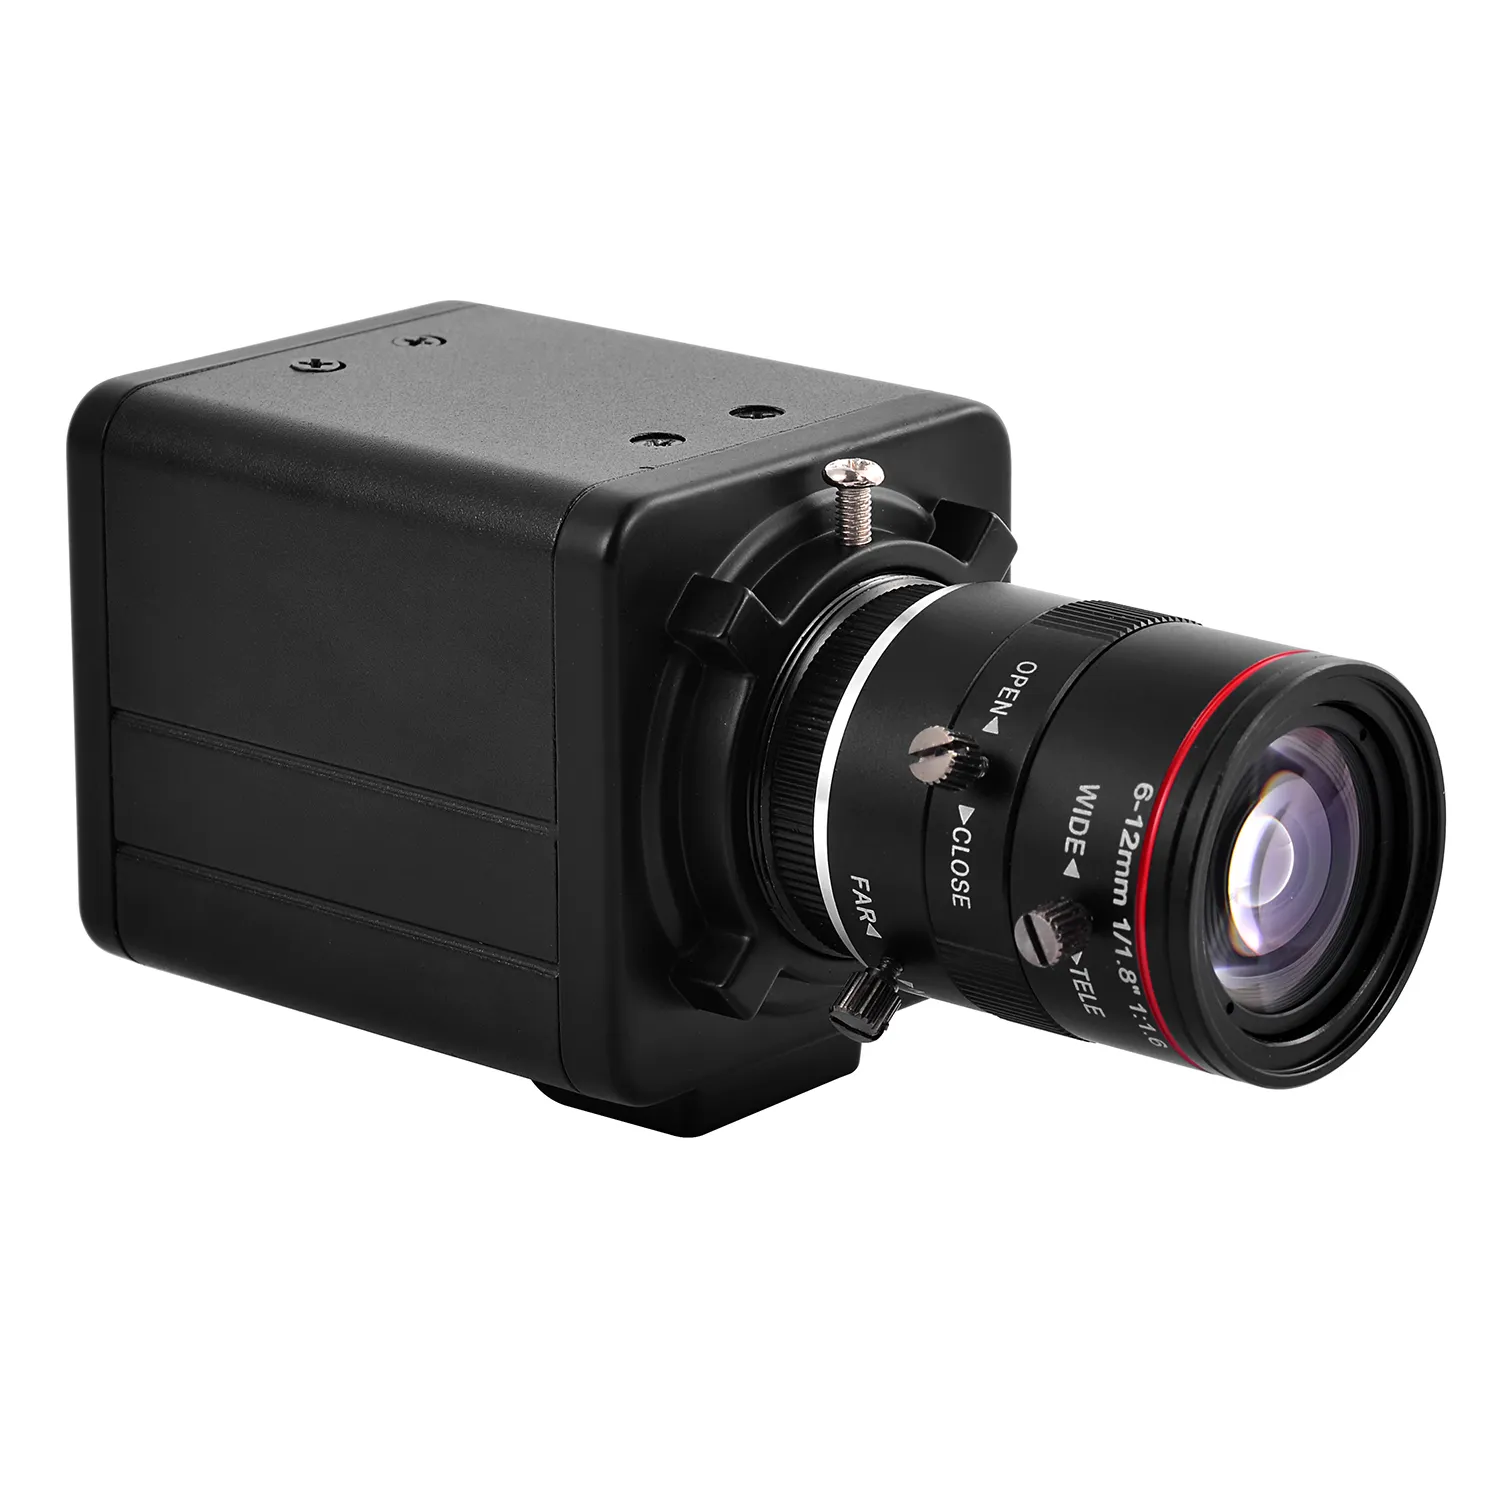 Kamera keamanan CCTV 2K 4MP POE Netwok kamera IP kamera kotak peluru dengan 1/1 industri lensa F1.6 kamera pengawas 8 "6-12MM